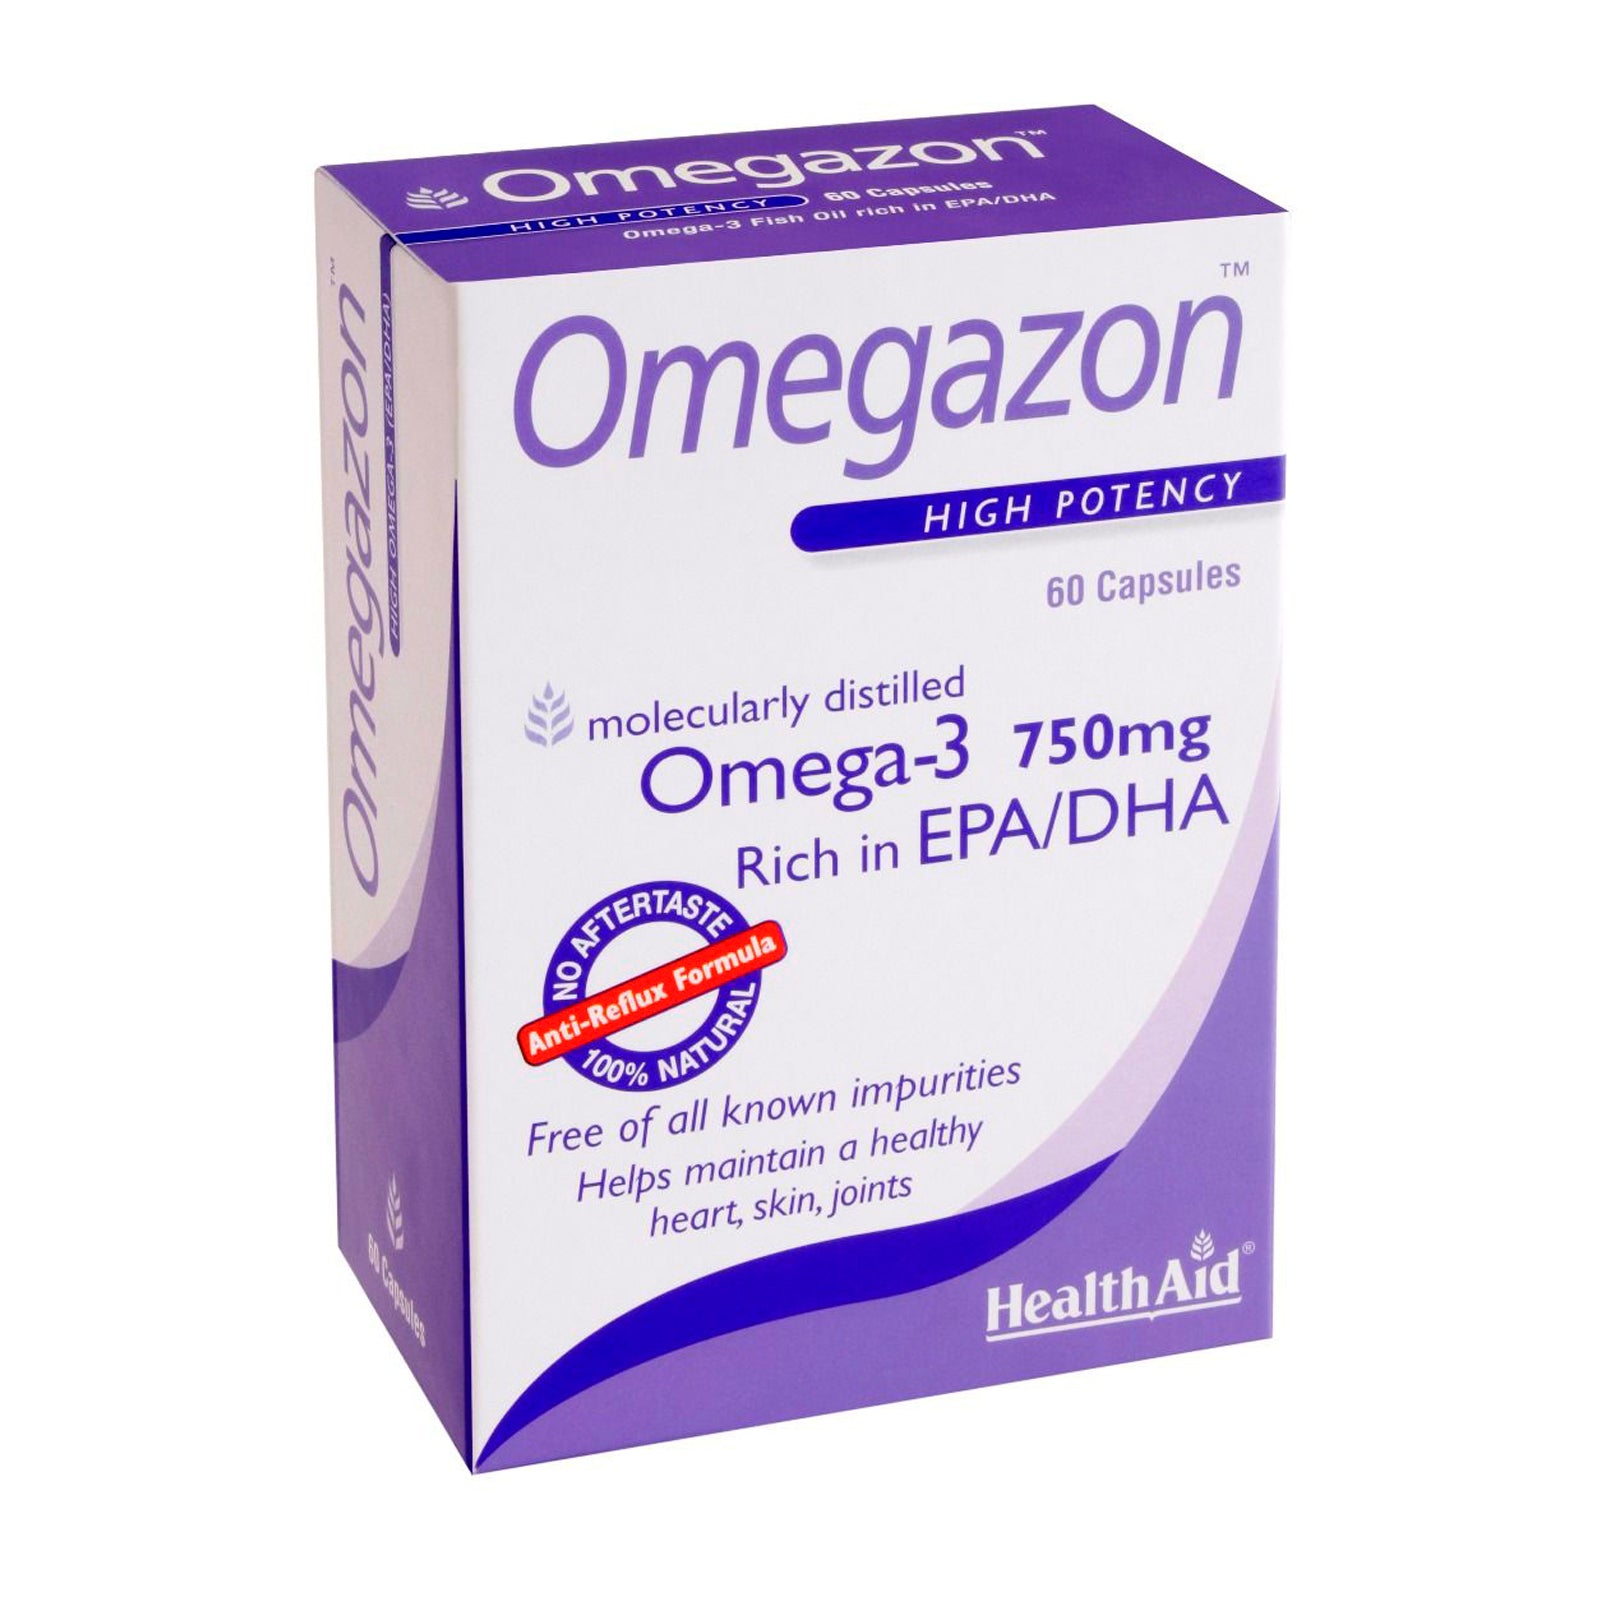 Omegazon Omega-3 750mg 30 kapsulas